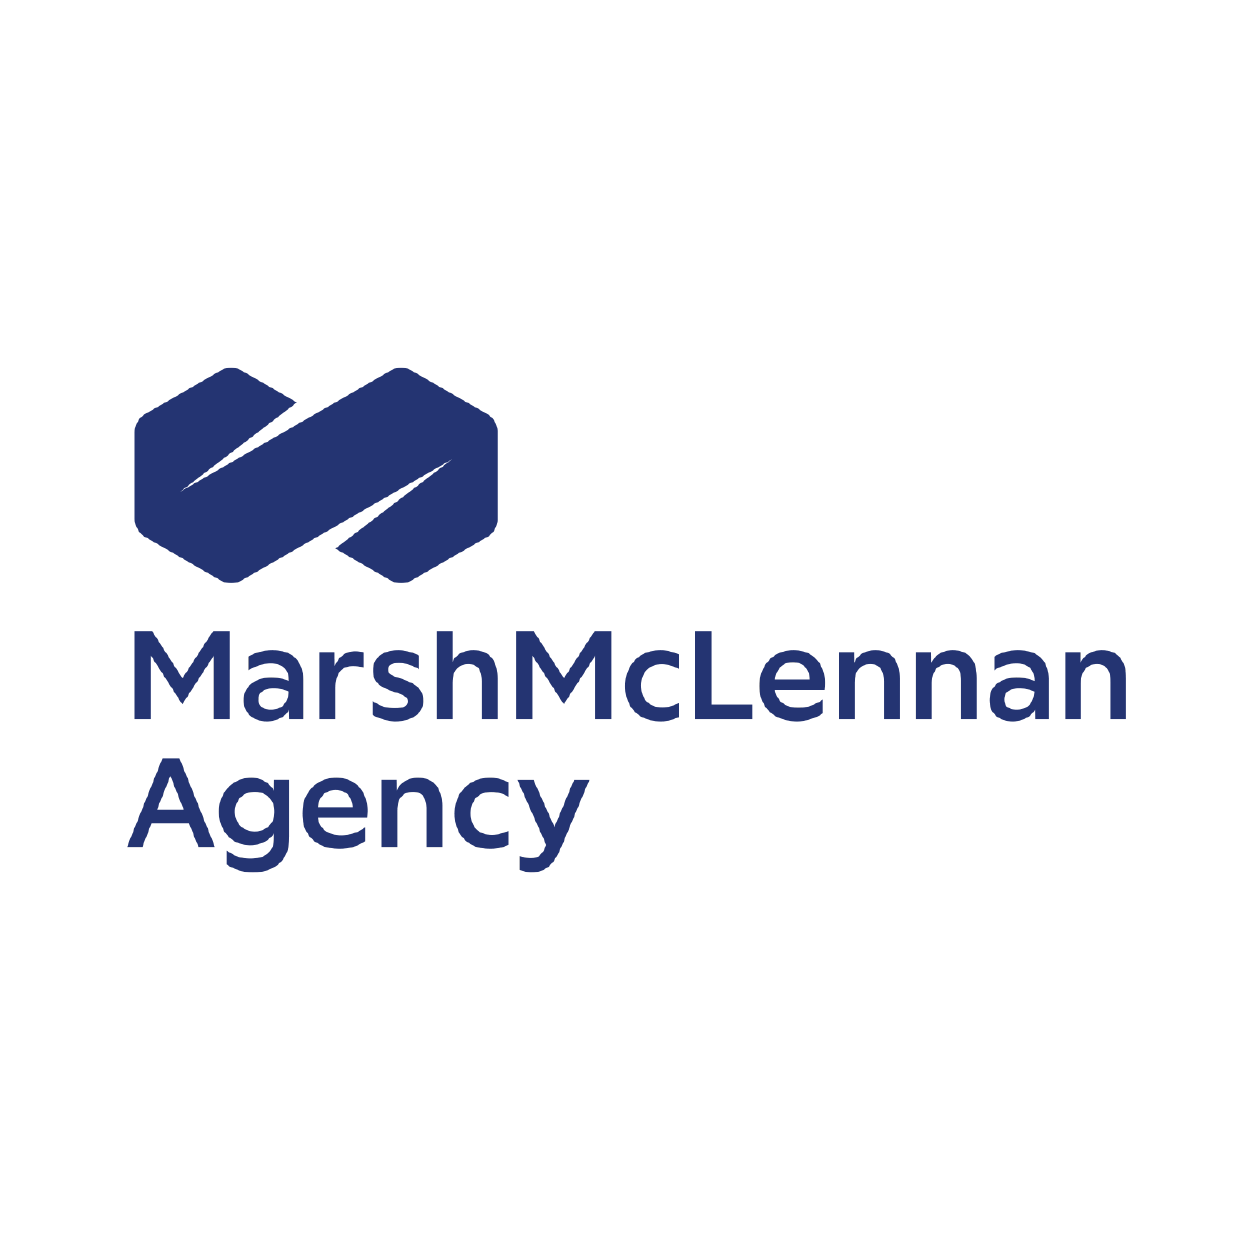 Marsh McLennan Agency Company Logo